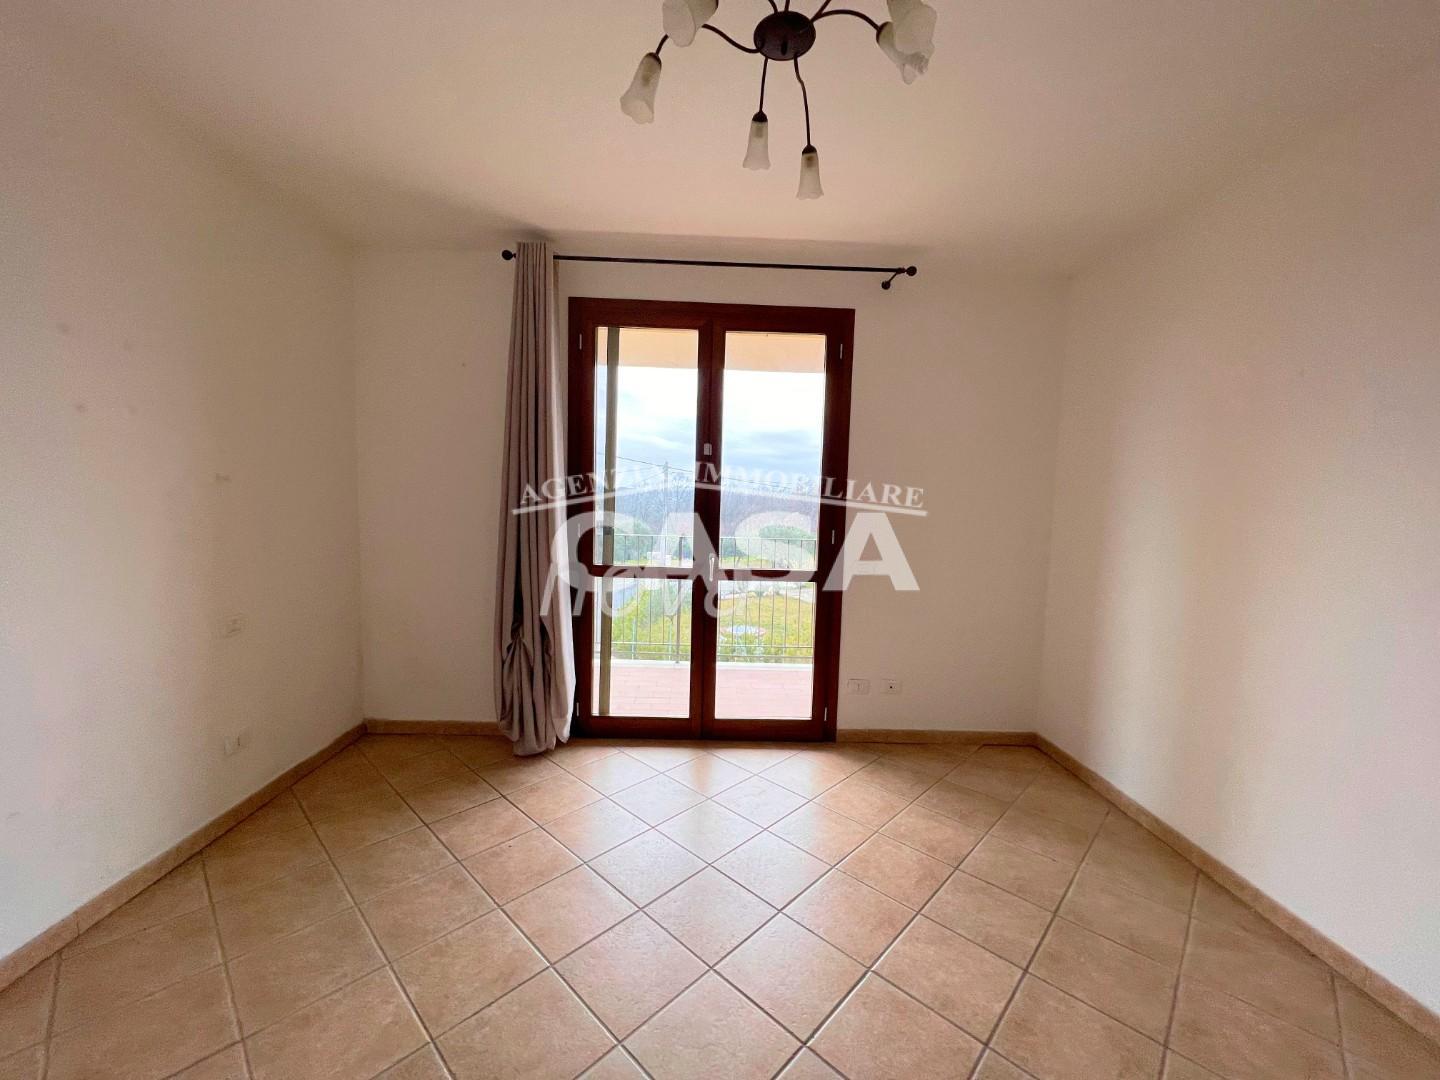 Appartamento in vendita a Santa Maria a Monte, 3 locali, prezzo € 115.000 | PortaleAgenzieImmobiliari.it